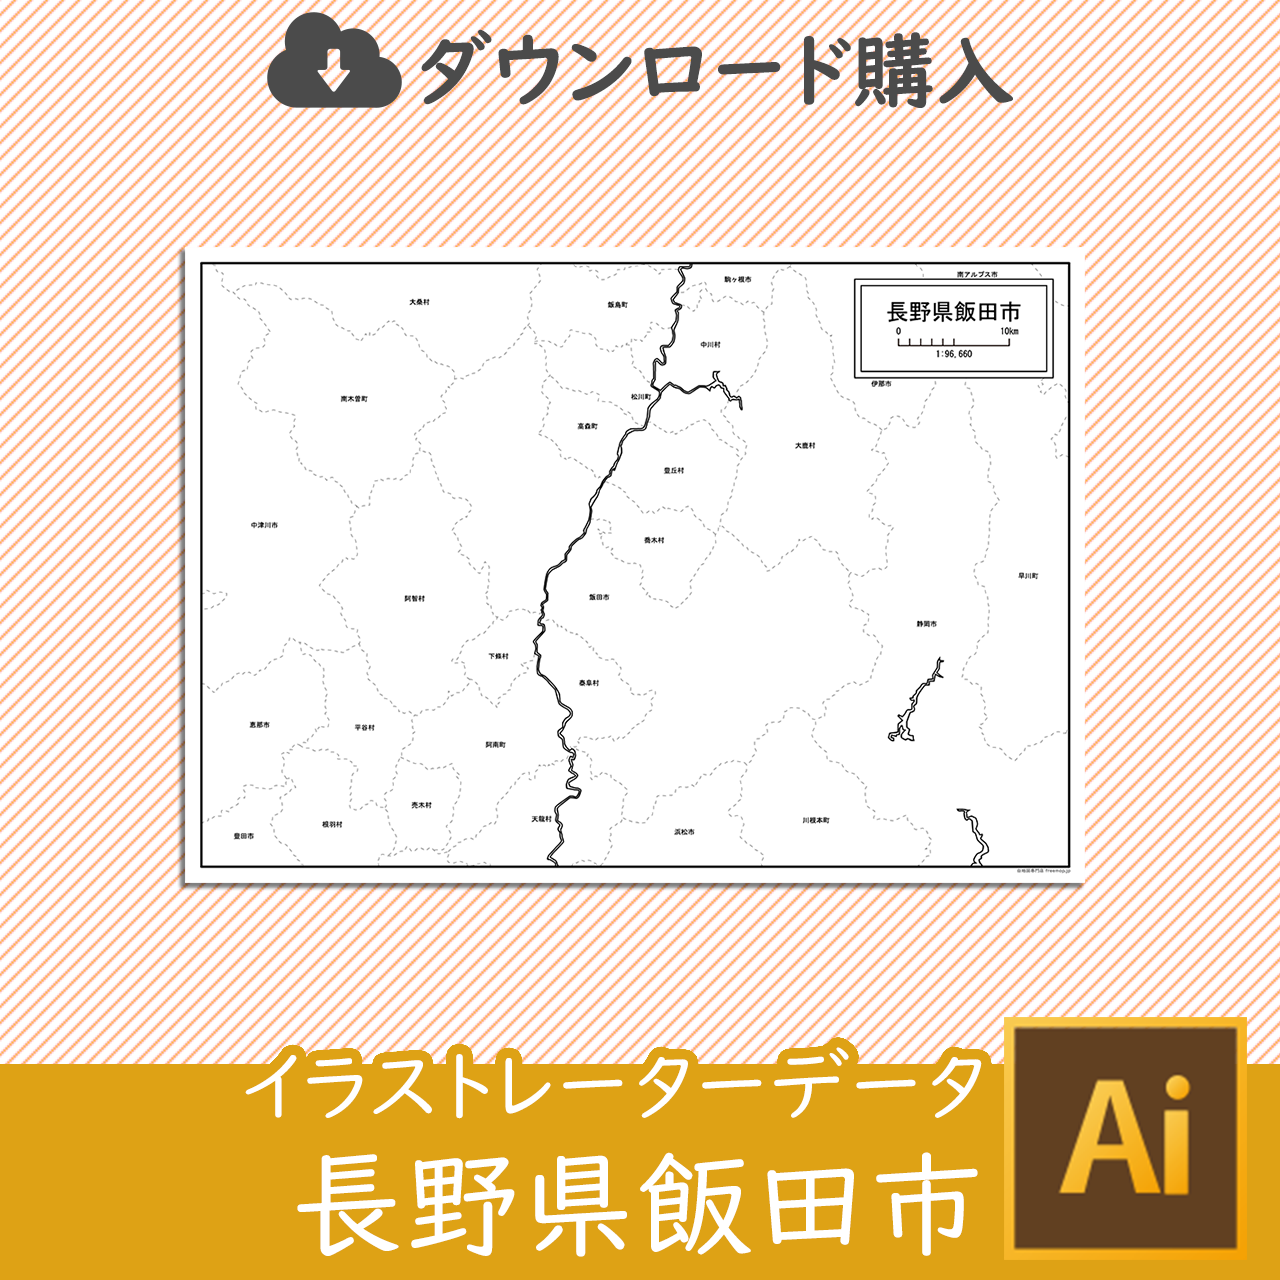 飯田市のaiデータのサムネイル画像